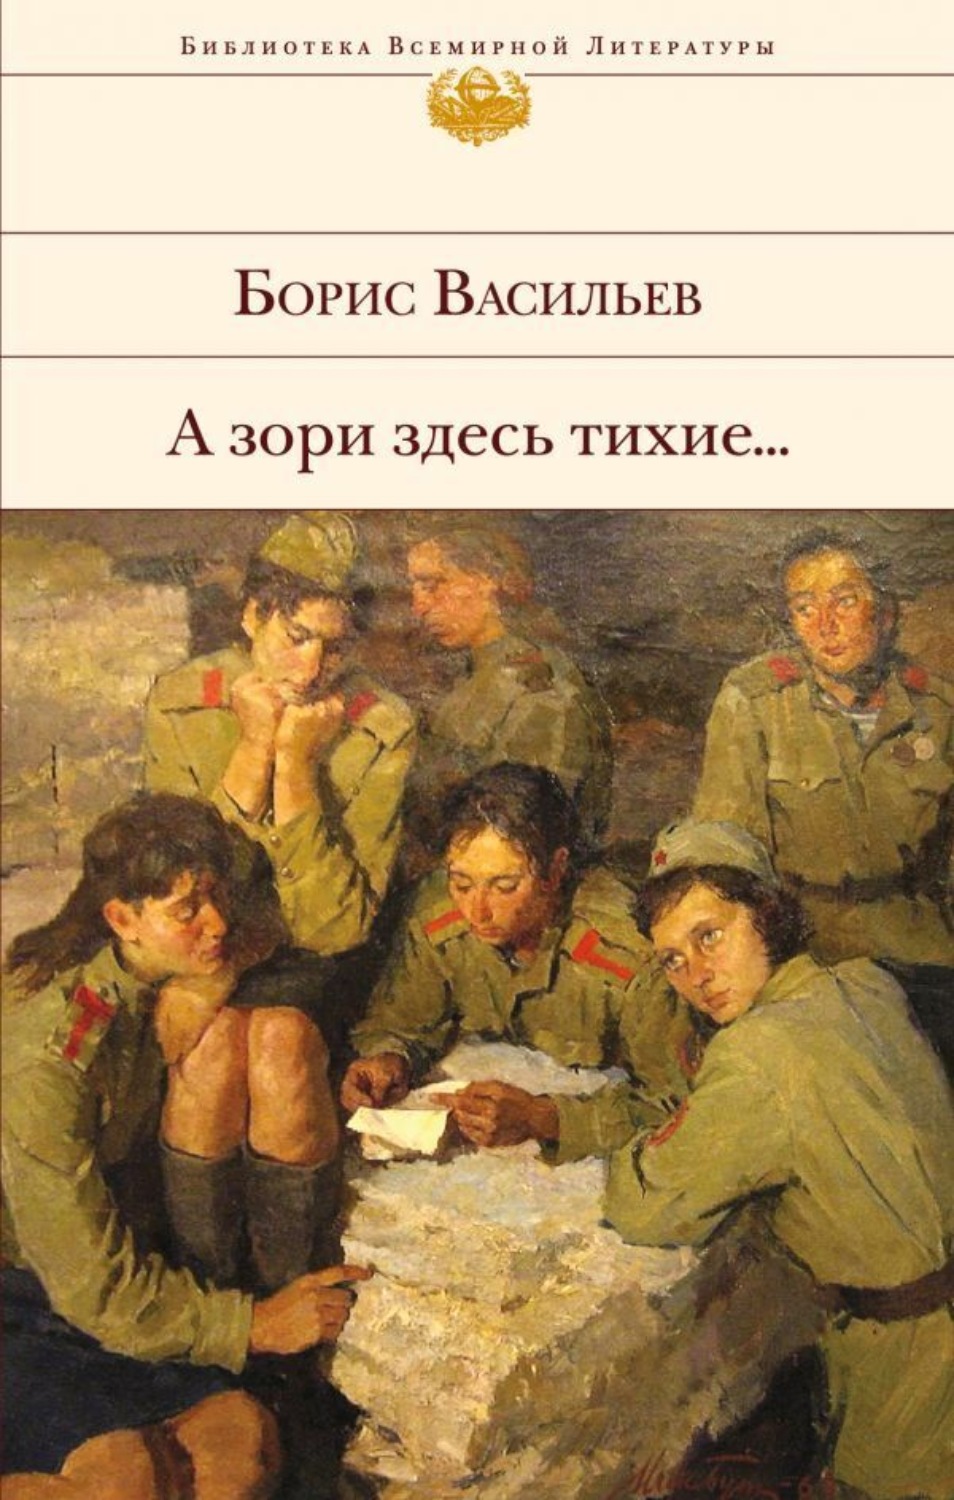 Книга: Отзыв о книге Б. Васильева В списках не значился